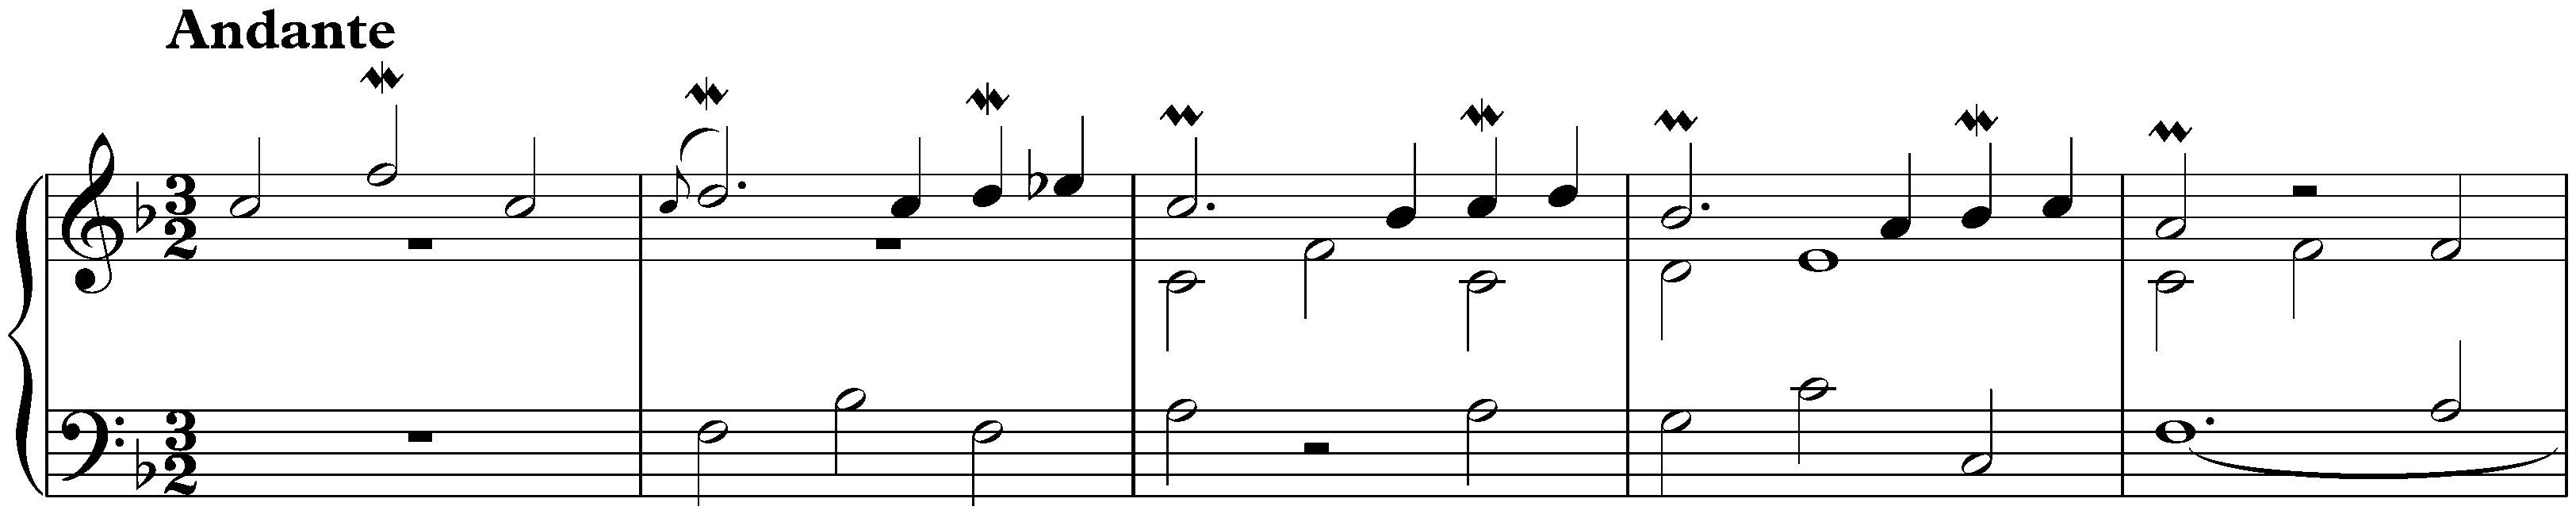 Praeludium et Partita del tuono terzo in F major, BWV 833; 1. Praeludium